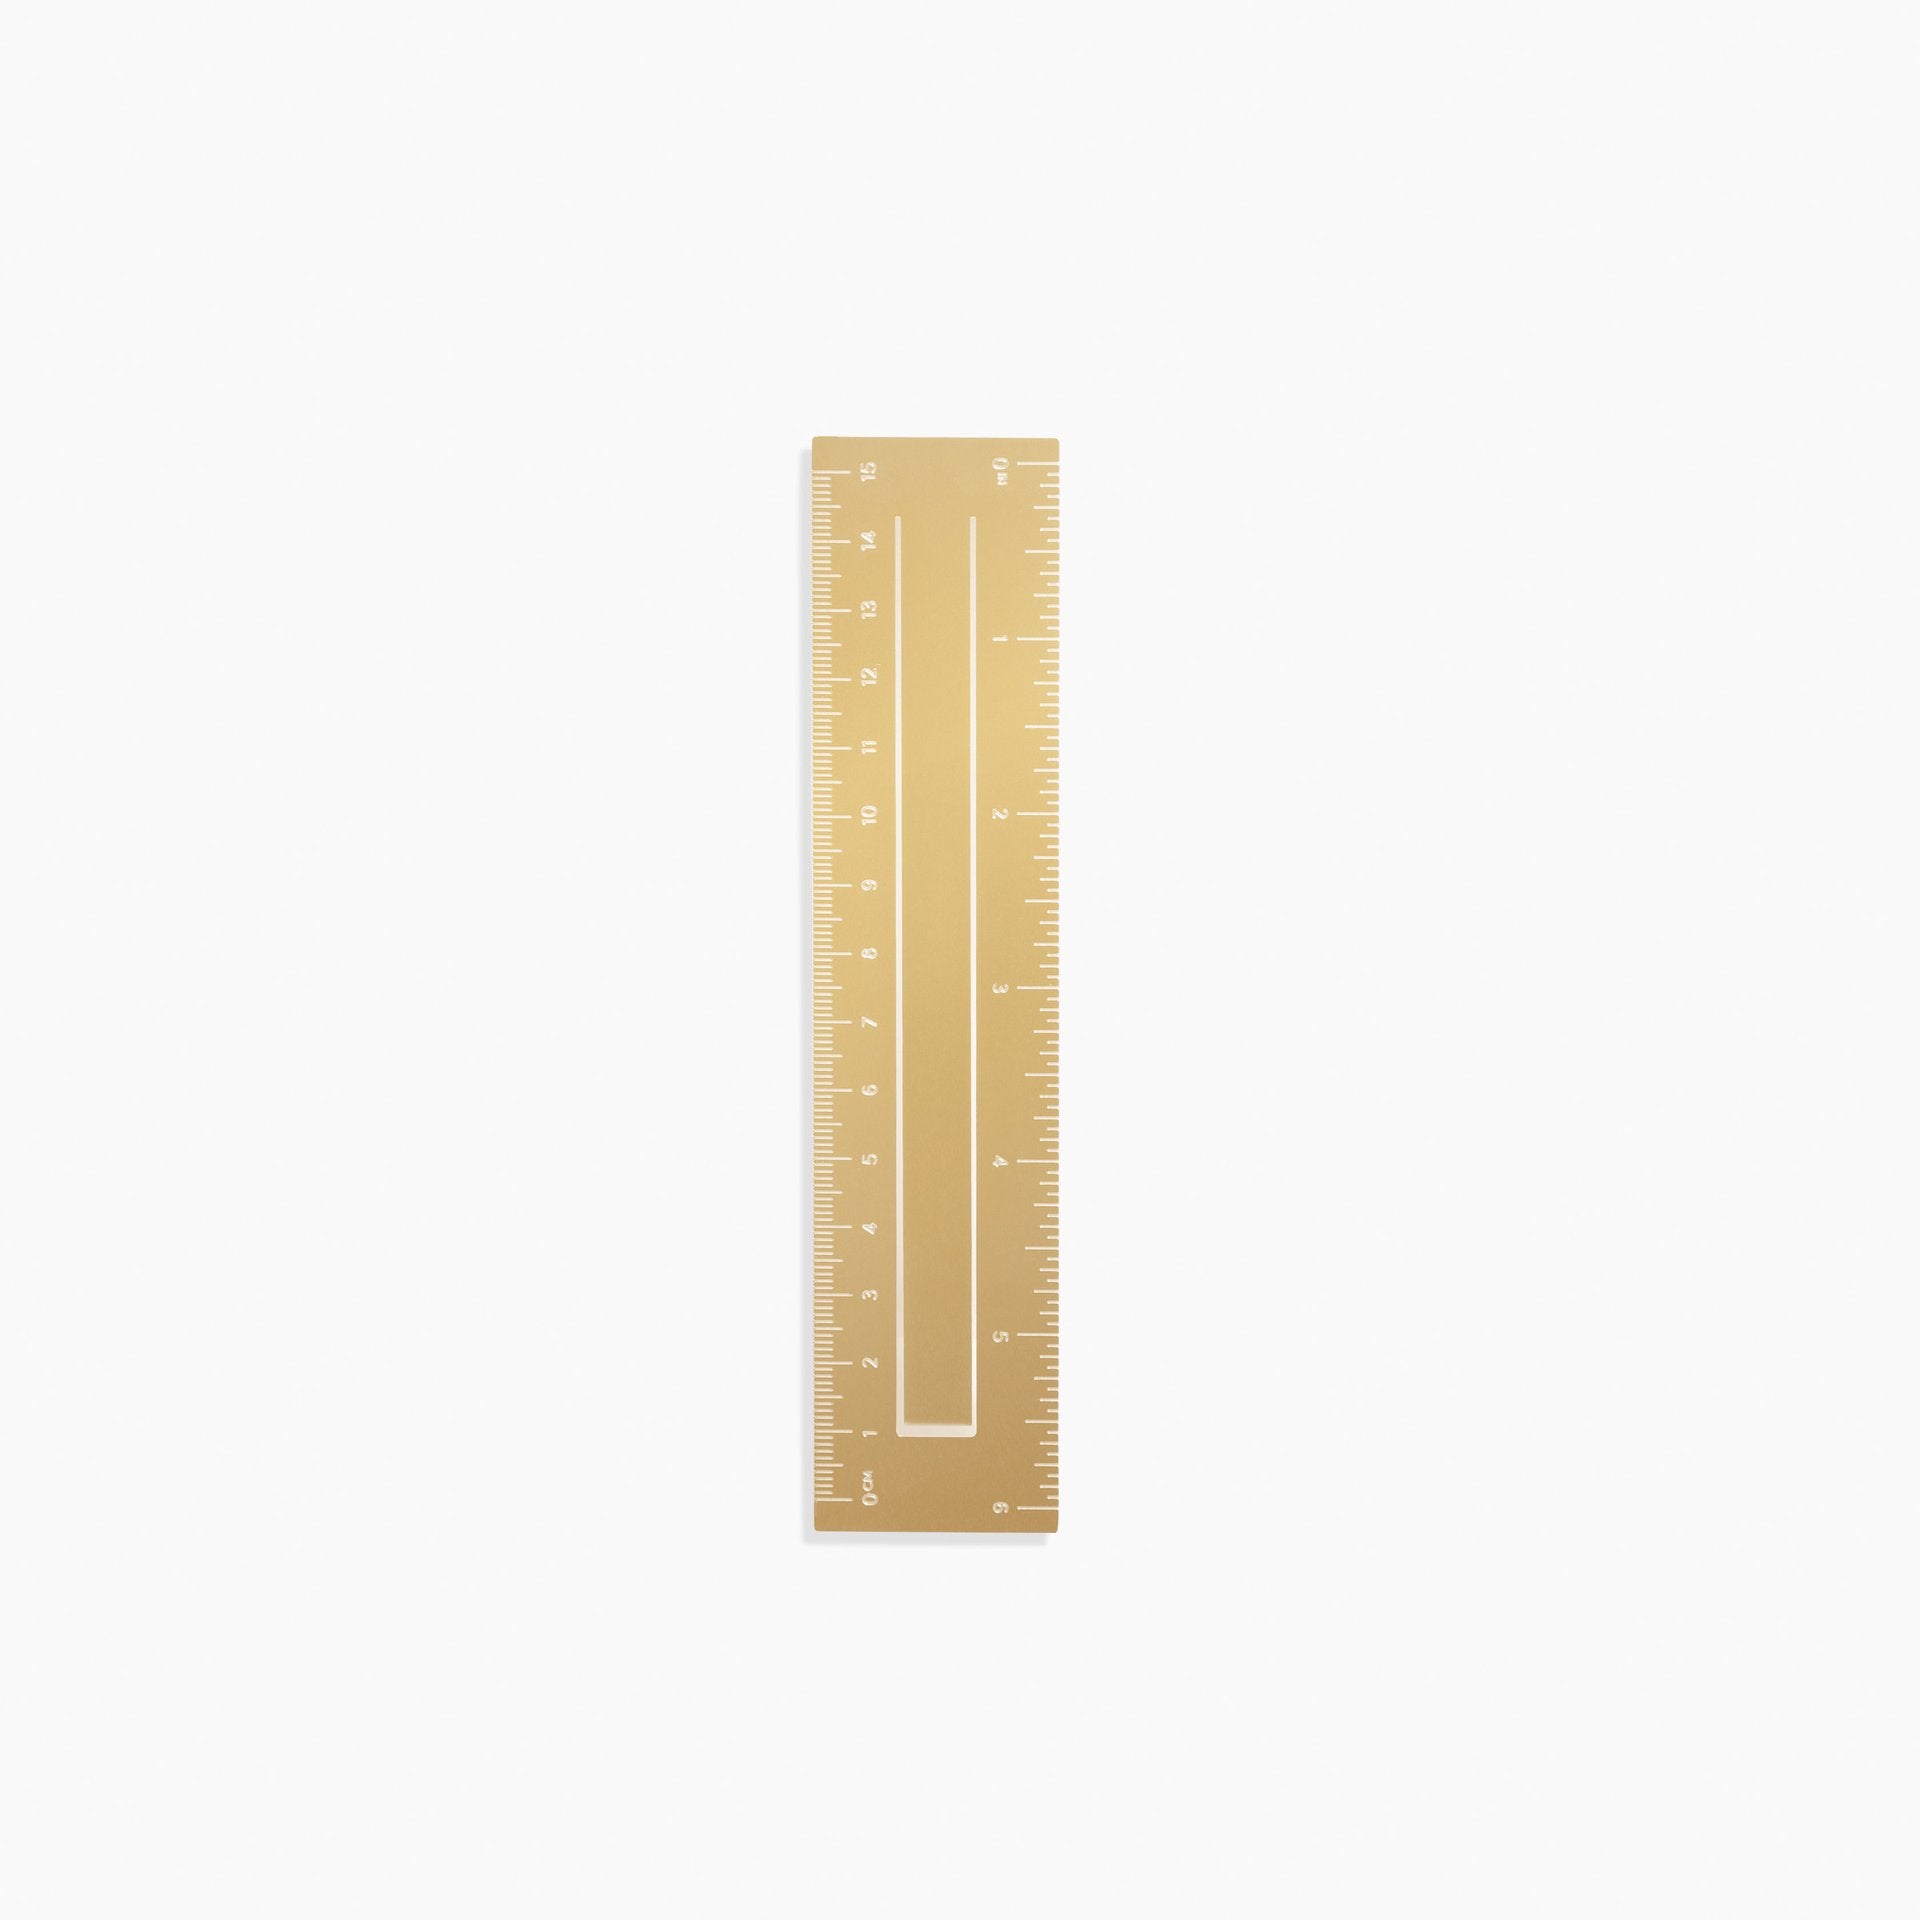 Poketo Brass Bookmark in Ruler